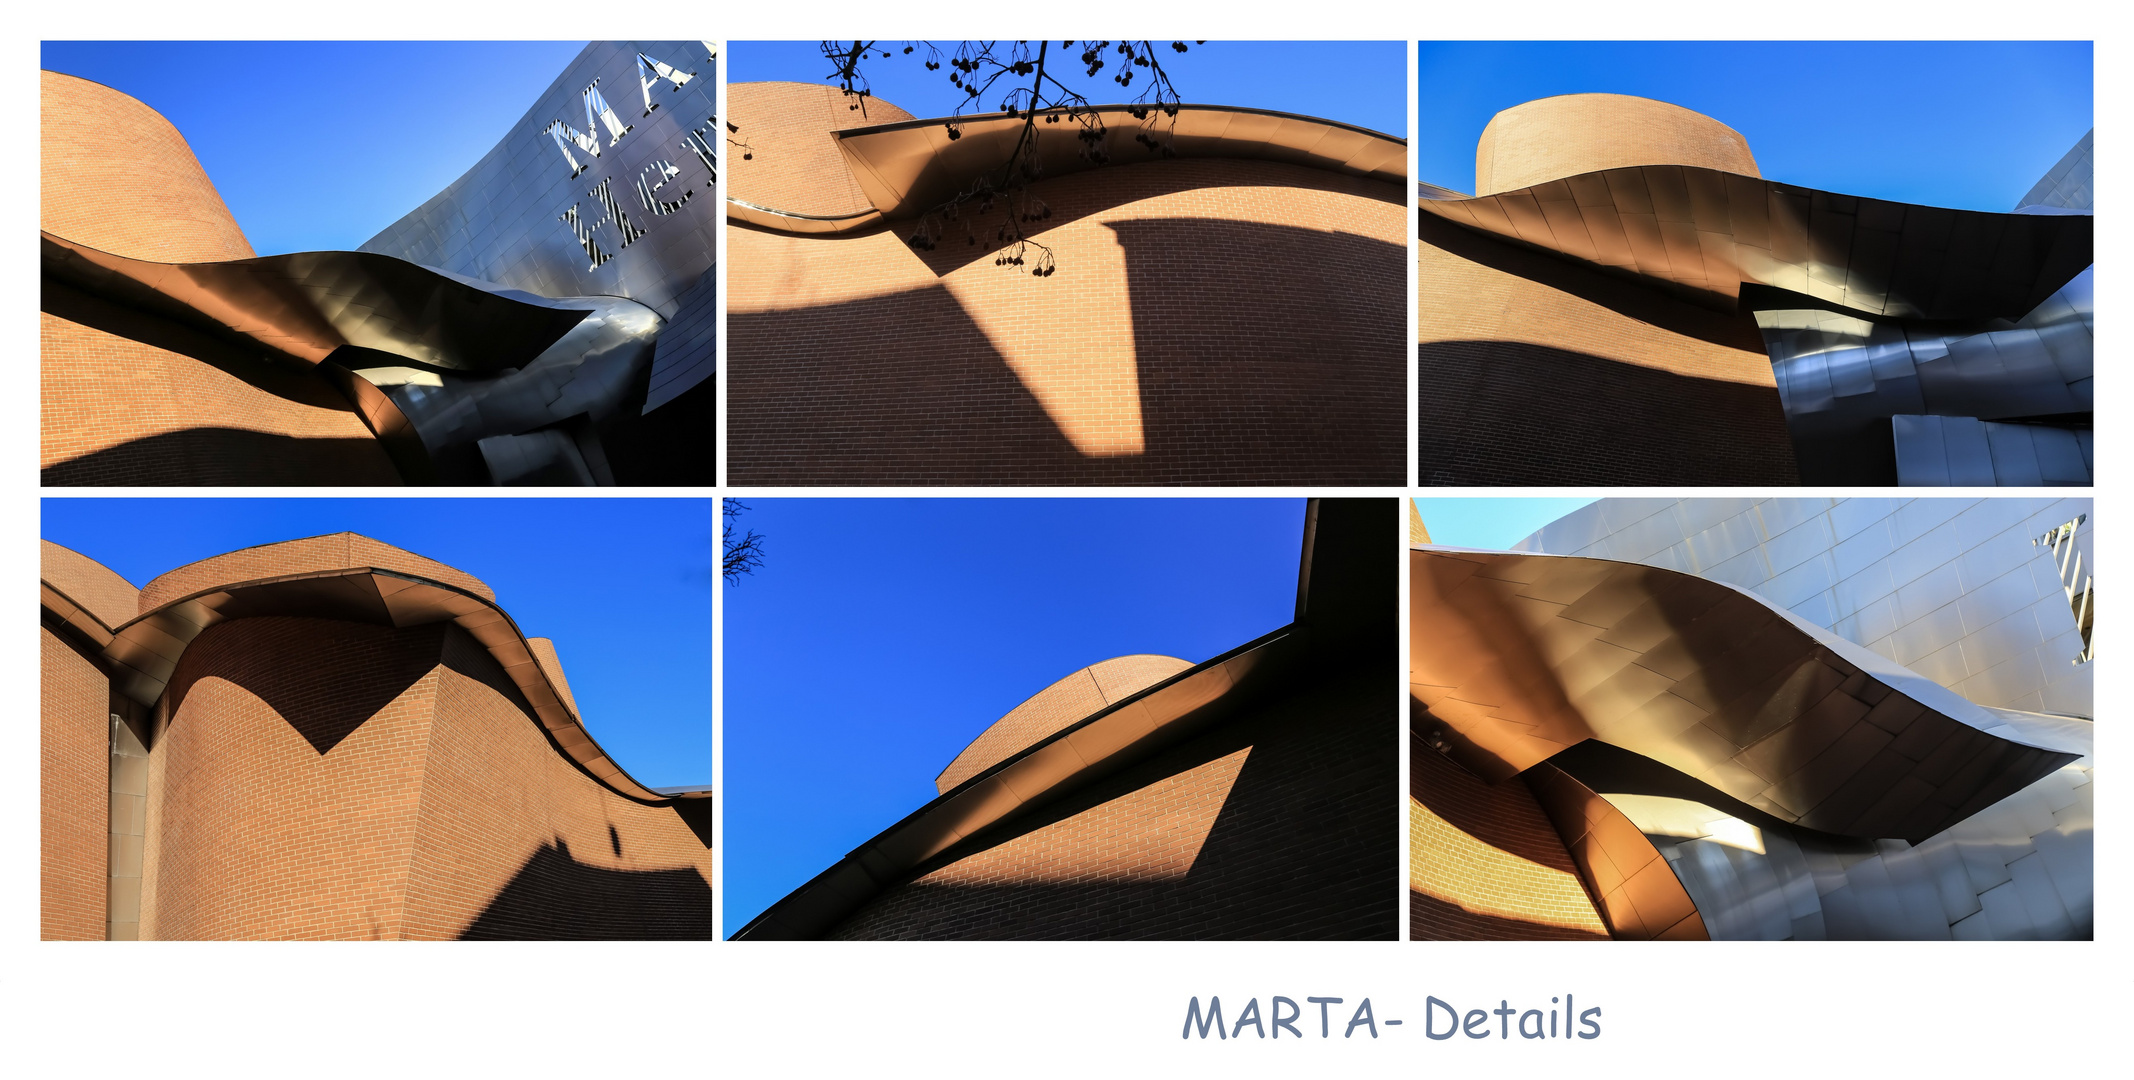 Marta-Details